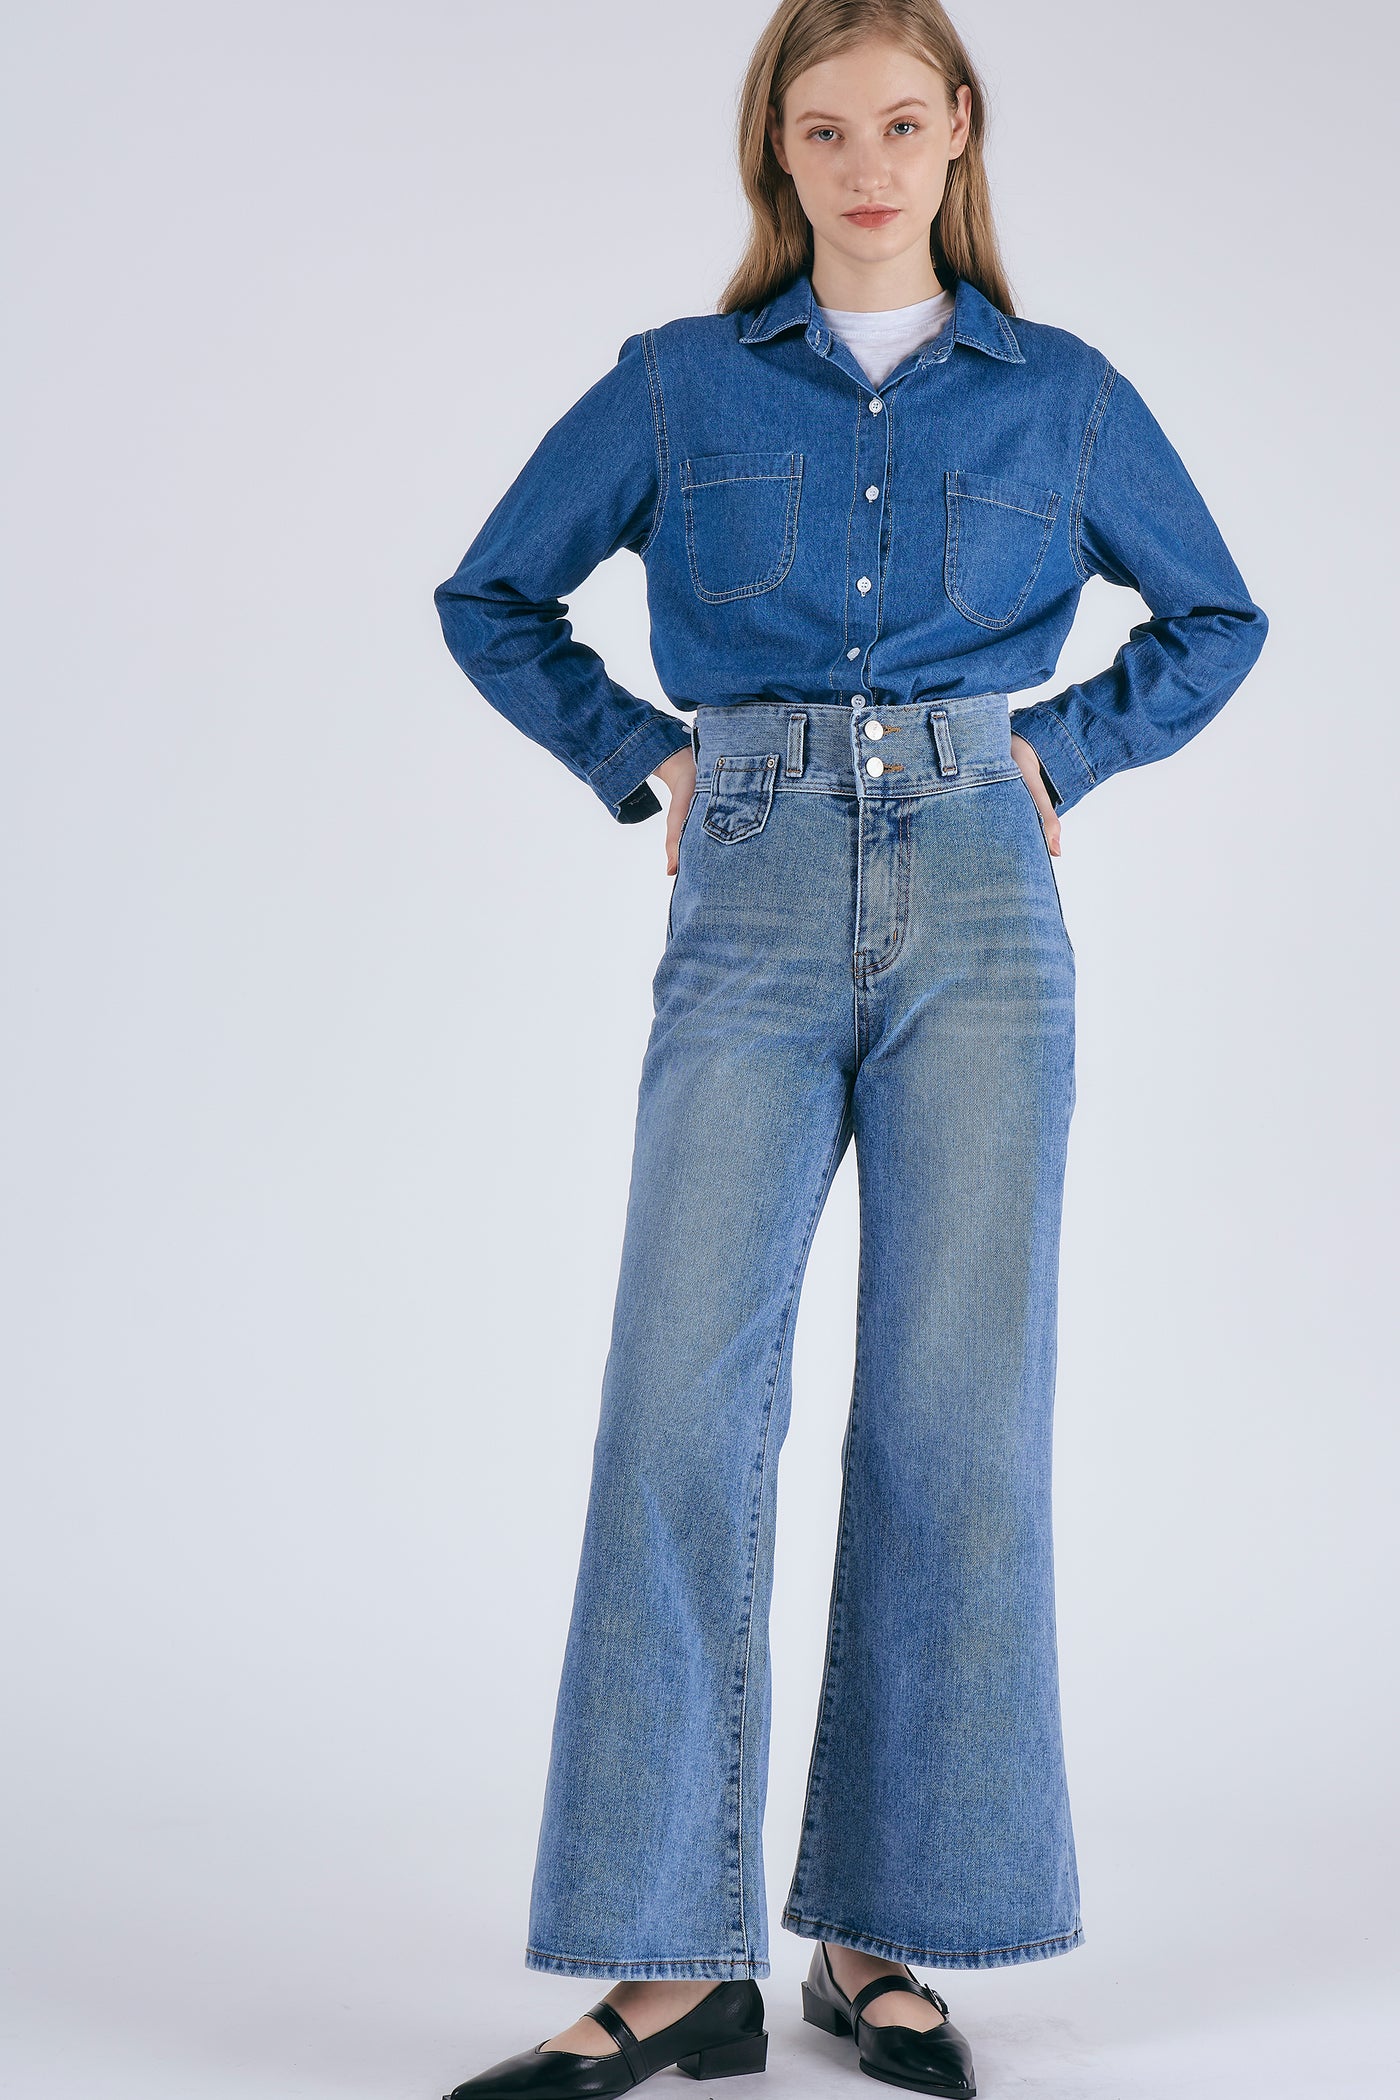 storets.com Elsie Highwaist Flared Jeans